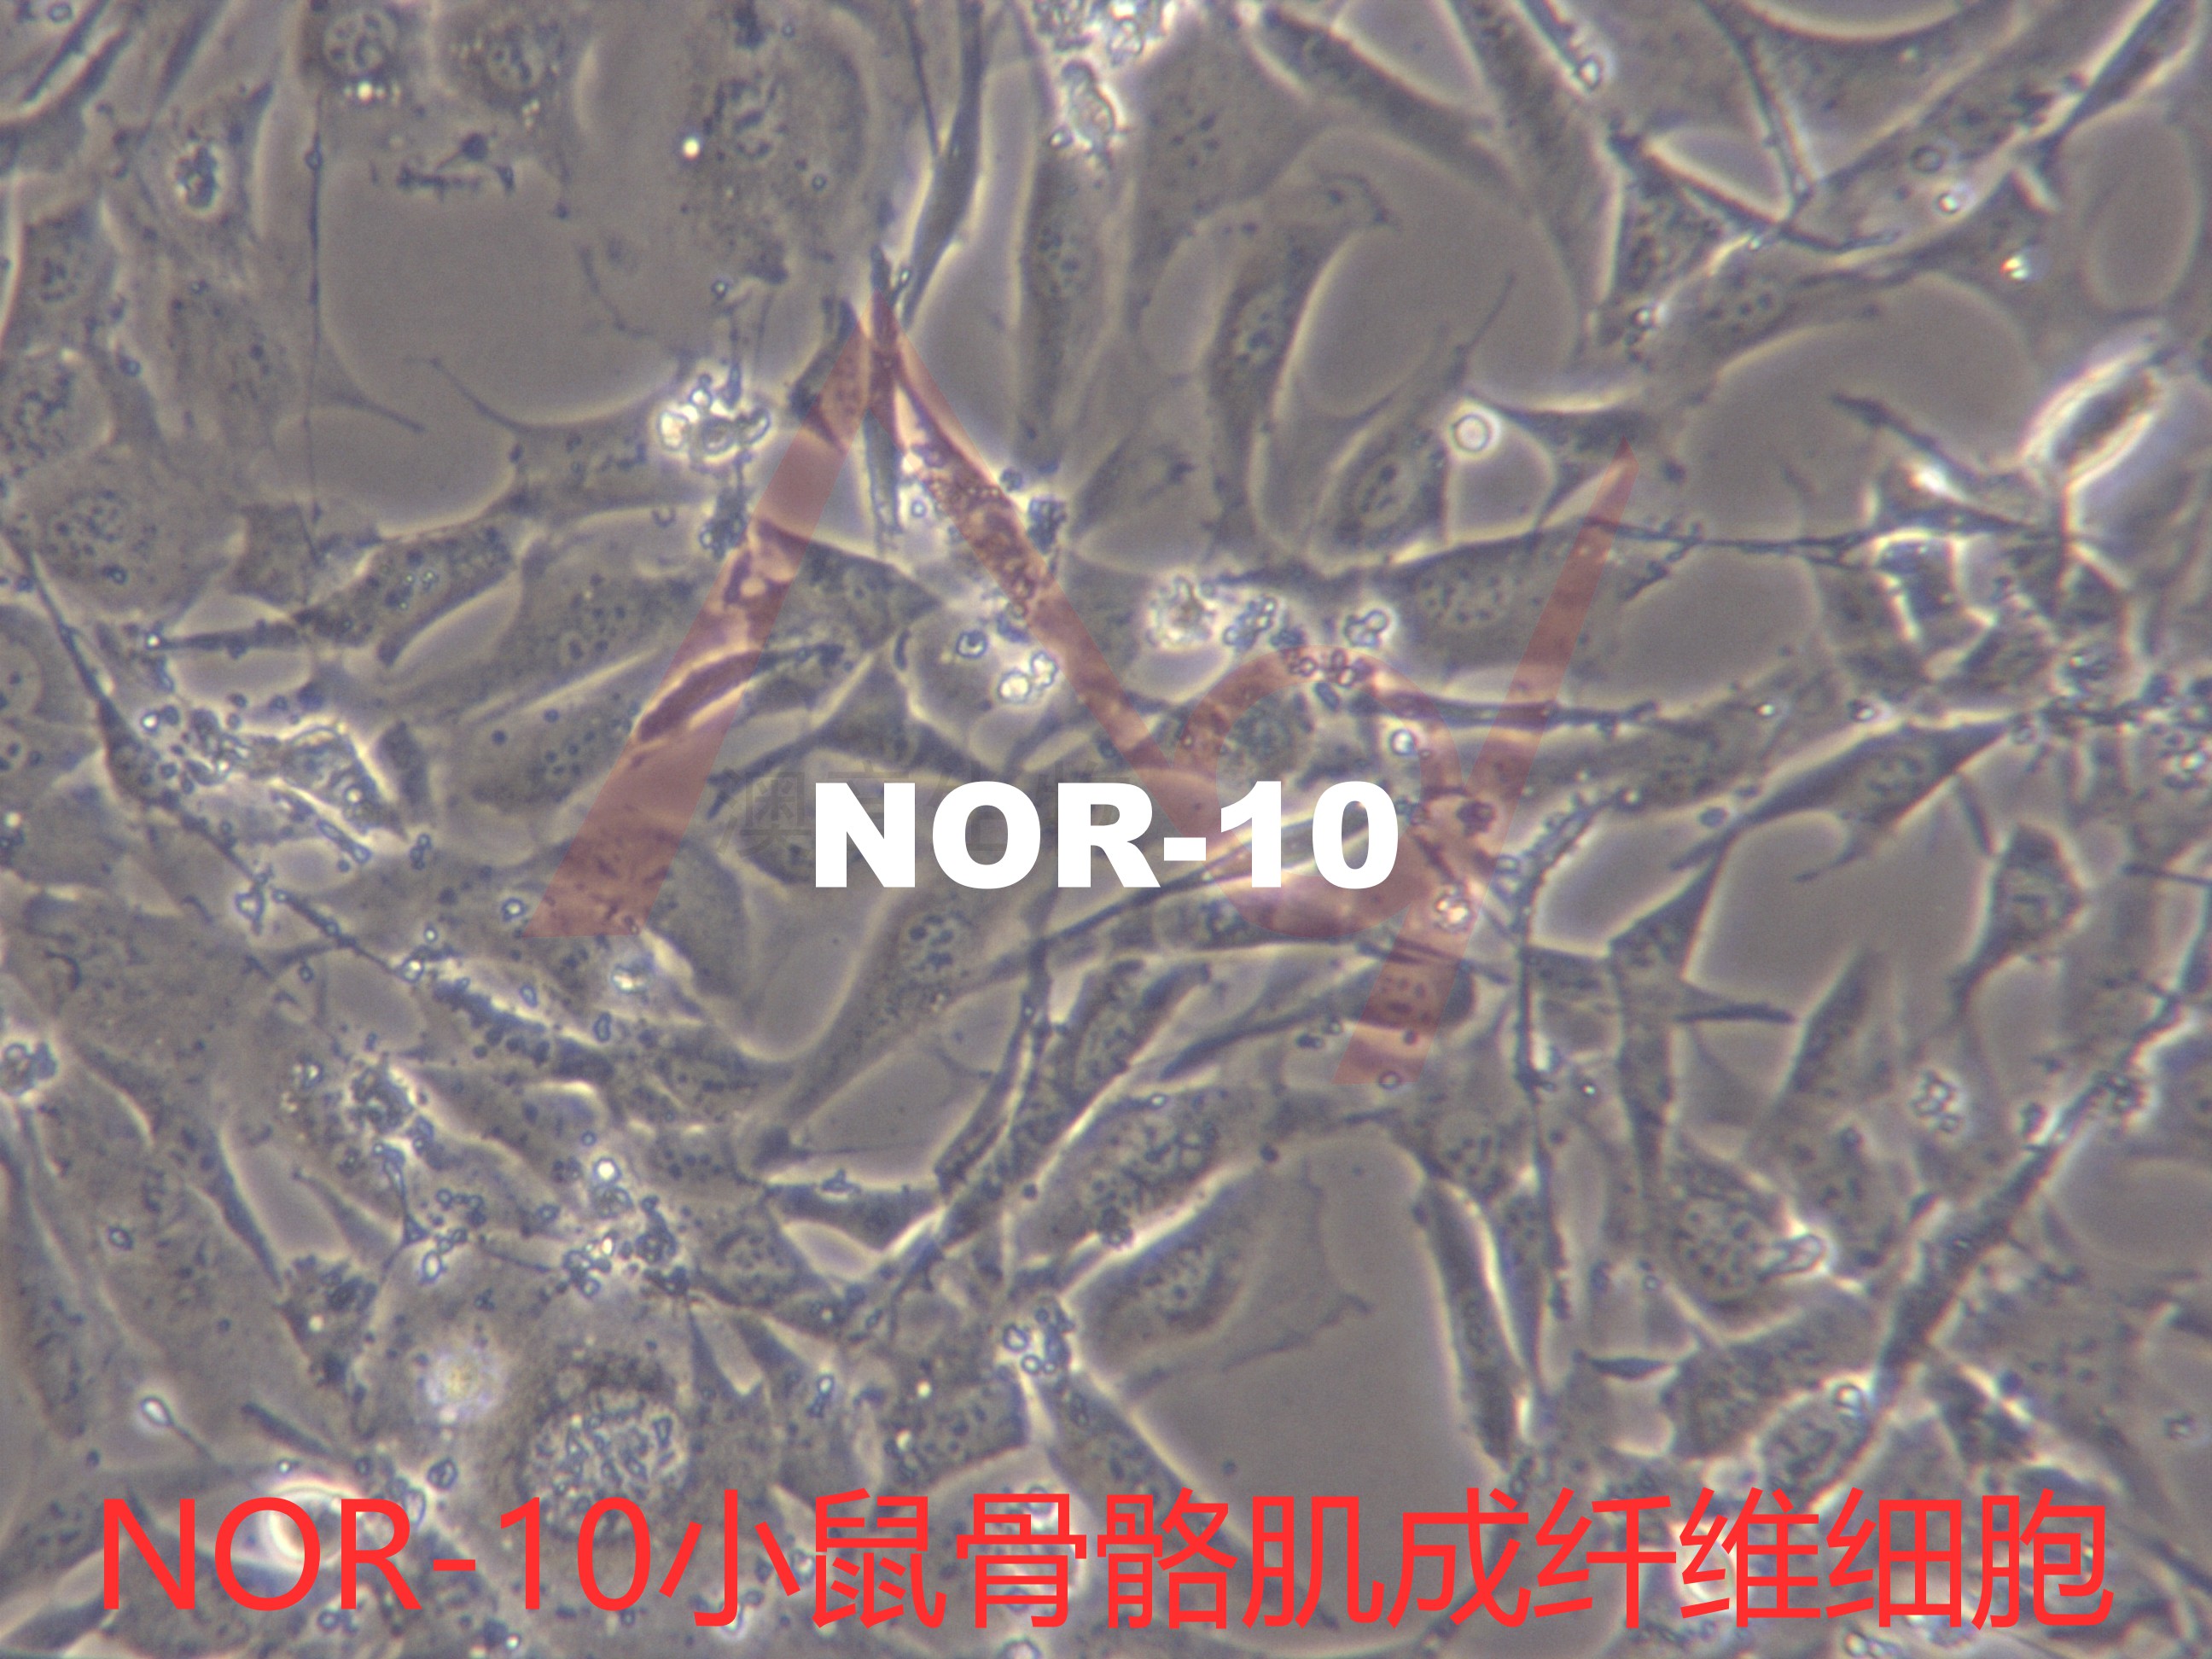 NOR-10【NOR 10; NOR10; Nor10; Normal fibroblast-10】小鼠骨骼肌成纤维细胞